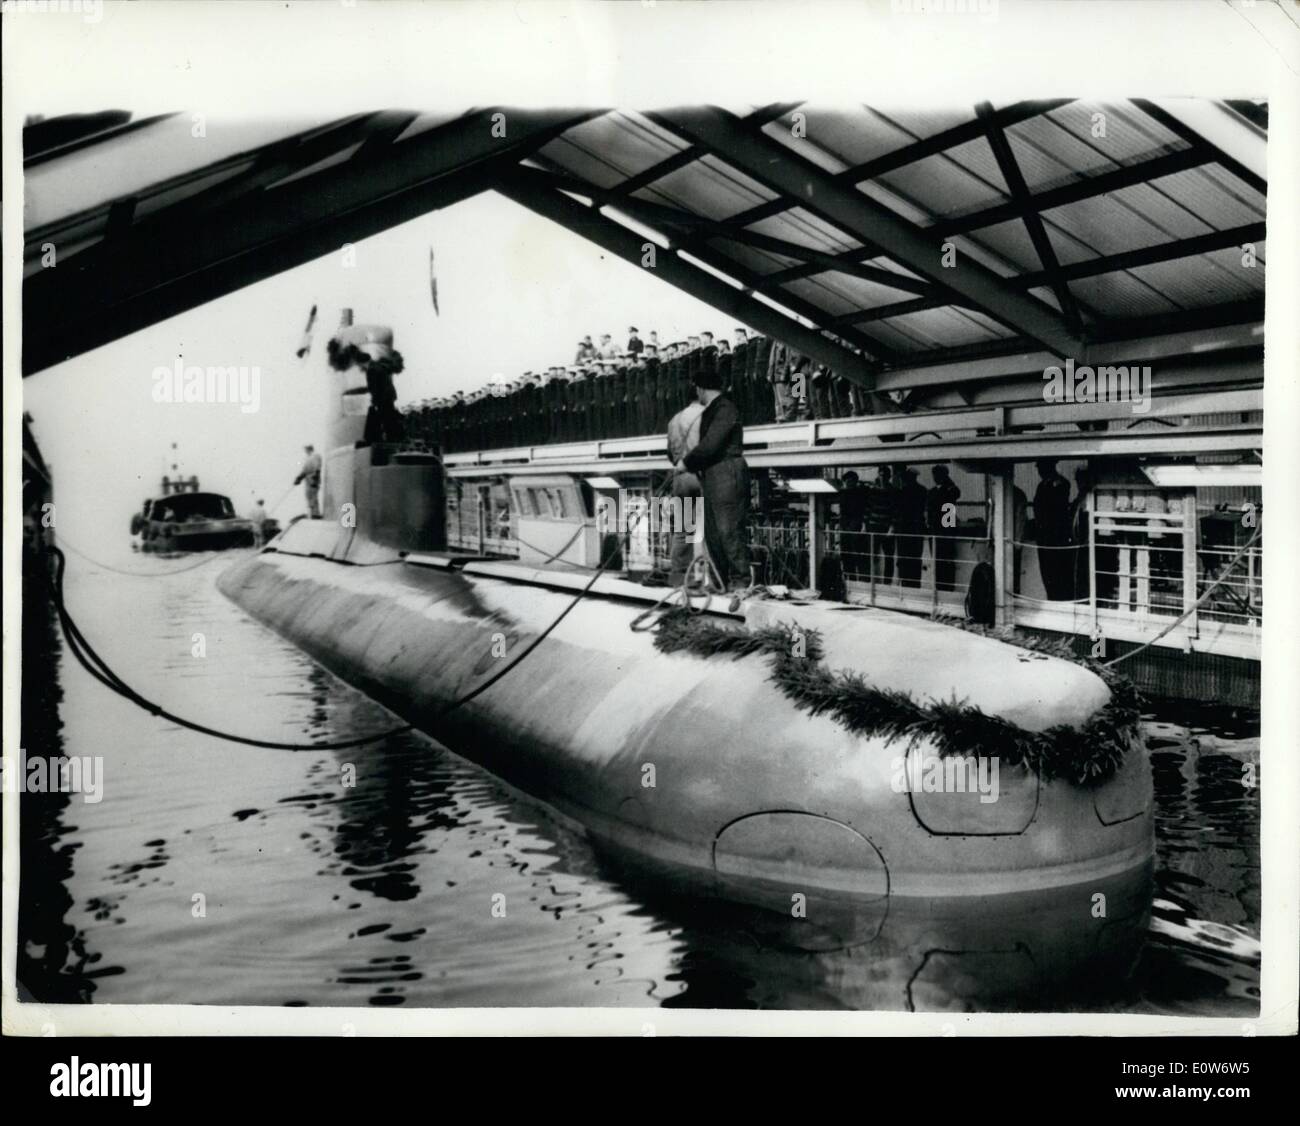 10 octobre 1961 - ''U Boat'' n°1 est lancé, premier sous-marin d'après-guerre pour la marine de l'Allemagne de l'Ouest ; le premier bateau de la flotte de guerre allemande a été lancé au cours de la fin de semaine à la Kiel - célèbre comme le centre de guerre submersible. U Voile no. 1 serait extrêmement rapide, mais la vitesse réelle est secret et elle est capable de rester sous l'eau indéfiniment. Elle pèse 350 tonnes soit plus de 120 pi. de long et dispose de huit tubes lance-torpilles. Cet engin est le premier de 12 sur commande et son lancement est, dit-on, la re-naissance de l'Allemagne de l'Ouest comme une puissance maritime Banque D'Images